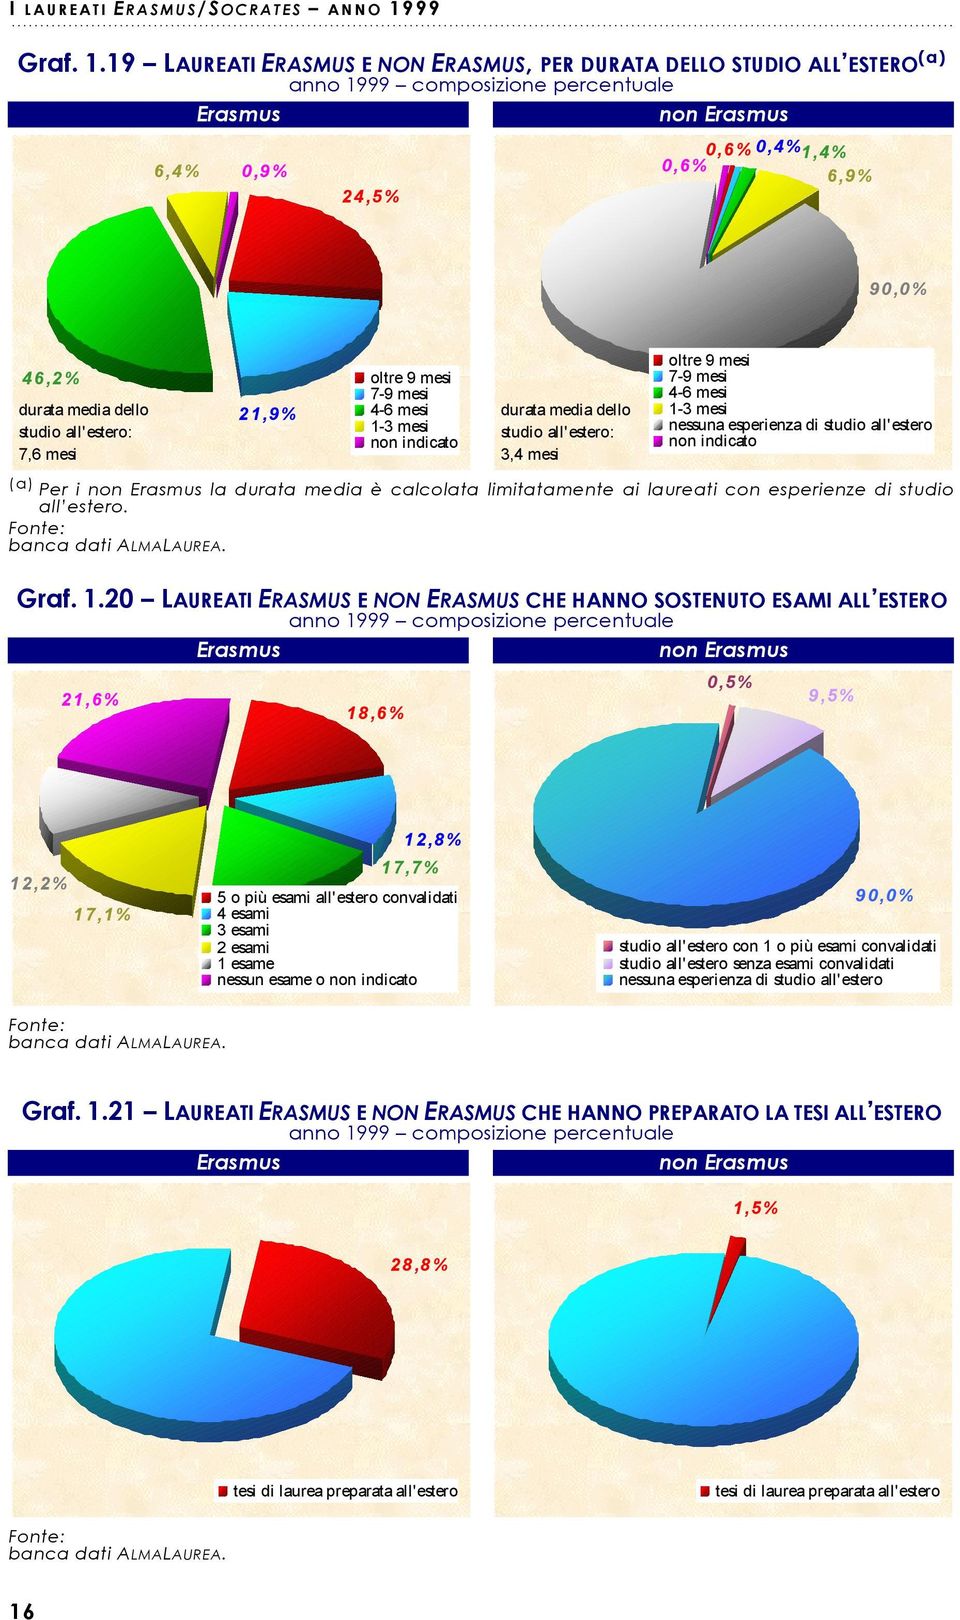 19 LAUREATI ERASMUS E NON ERASMUS, PER DURATA DELLO STUDIO ALL ESTERO (a) 6,4% 0,9% 24,5% 0,6%0,4% 1,4% 0,6% 6,9% 90,0% 46,2% oltre 9 mesi 7-9 mesi durata media dello 21,9% 4-6 mesi studio